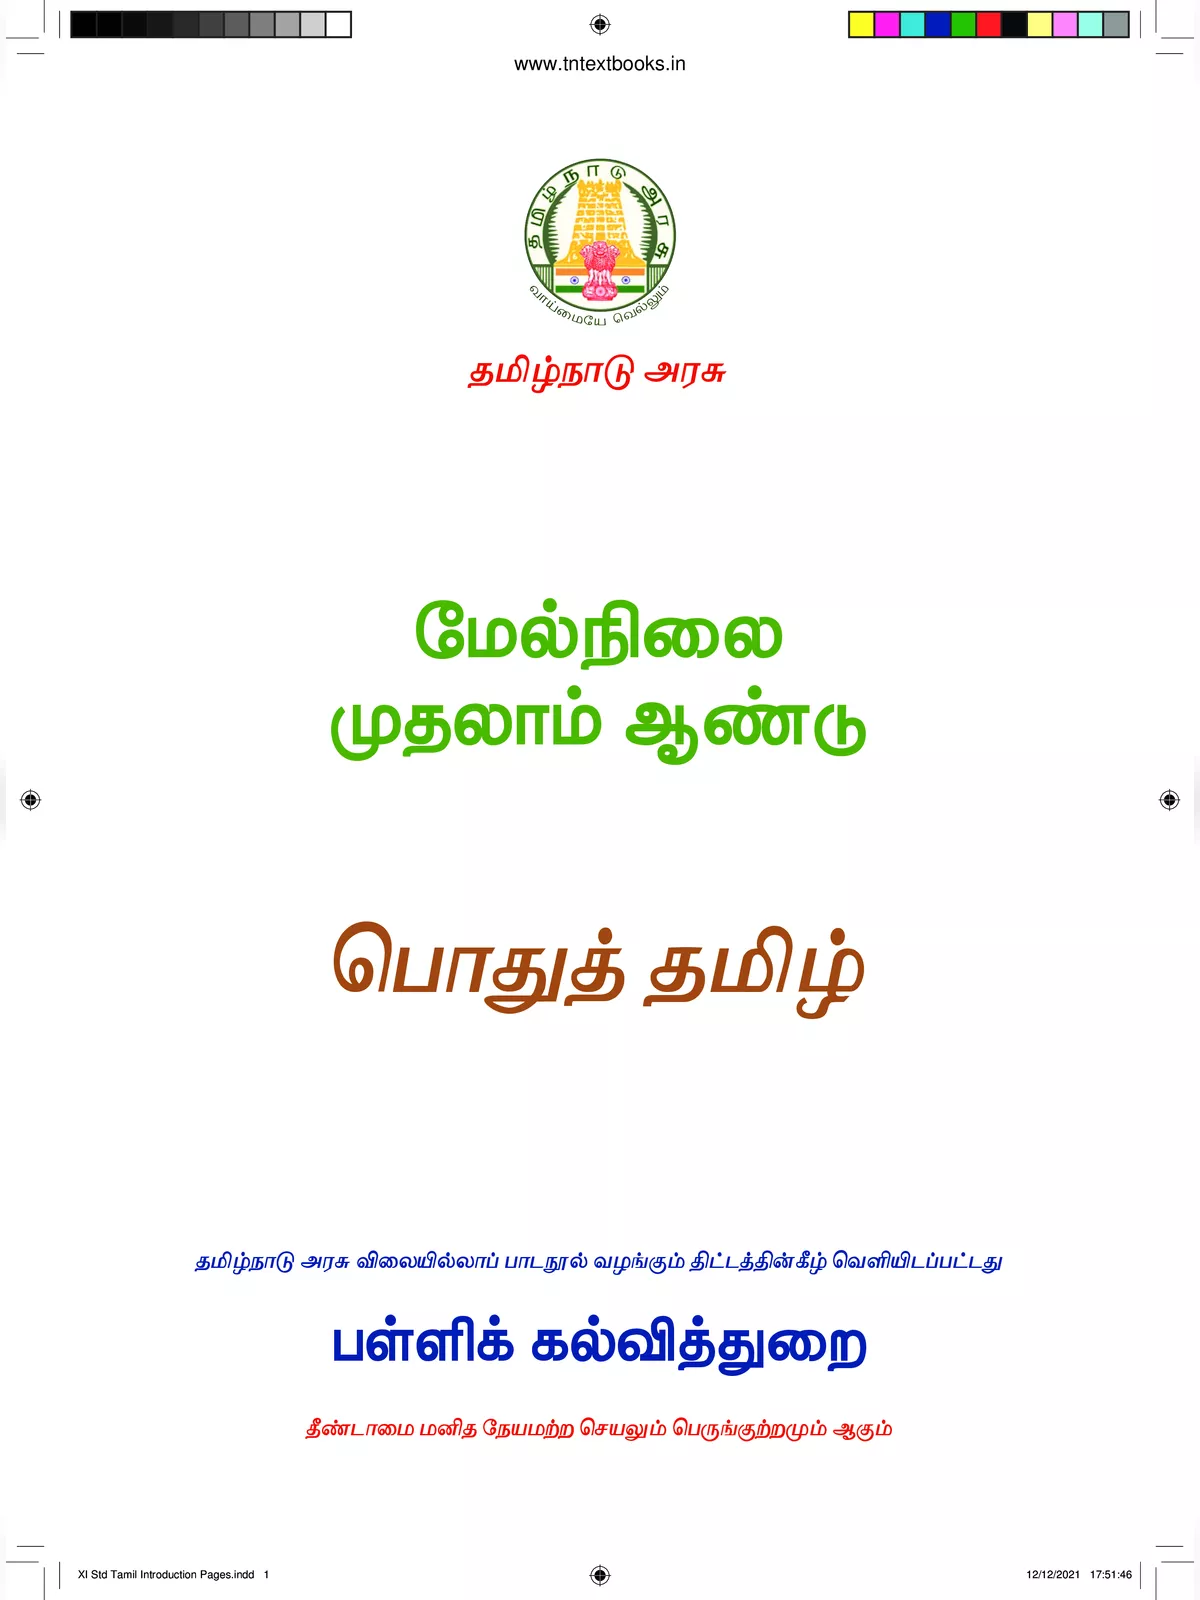 11th Tamil Book